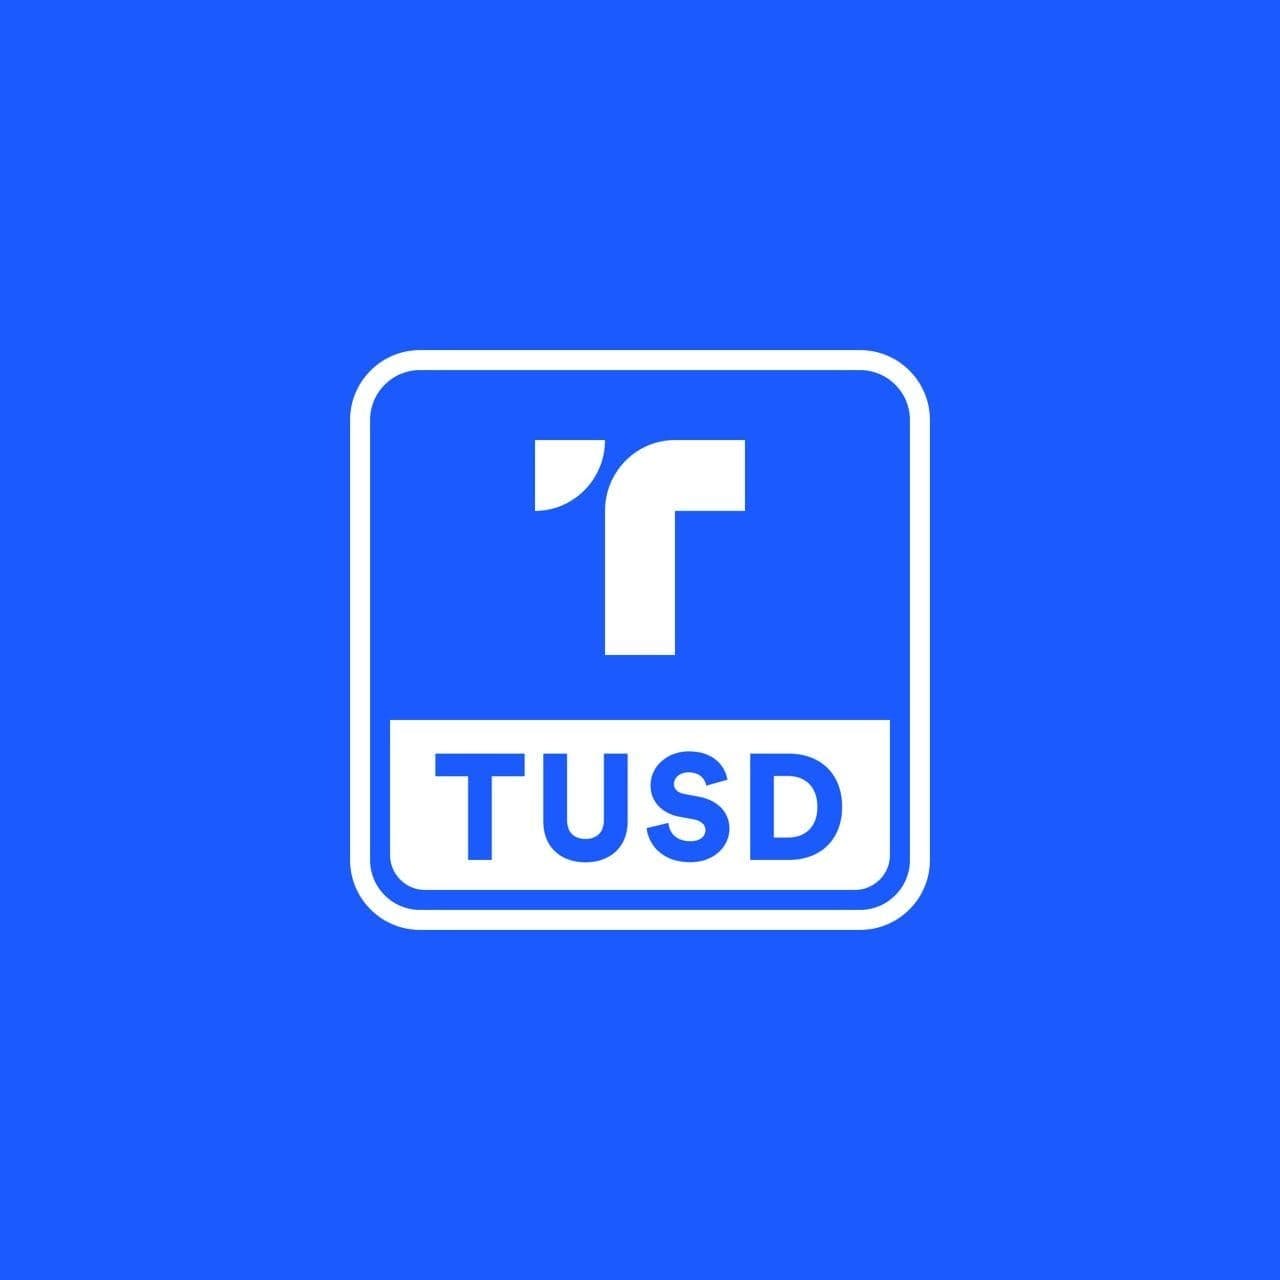 TrueUSD review